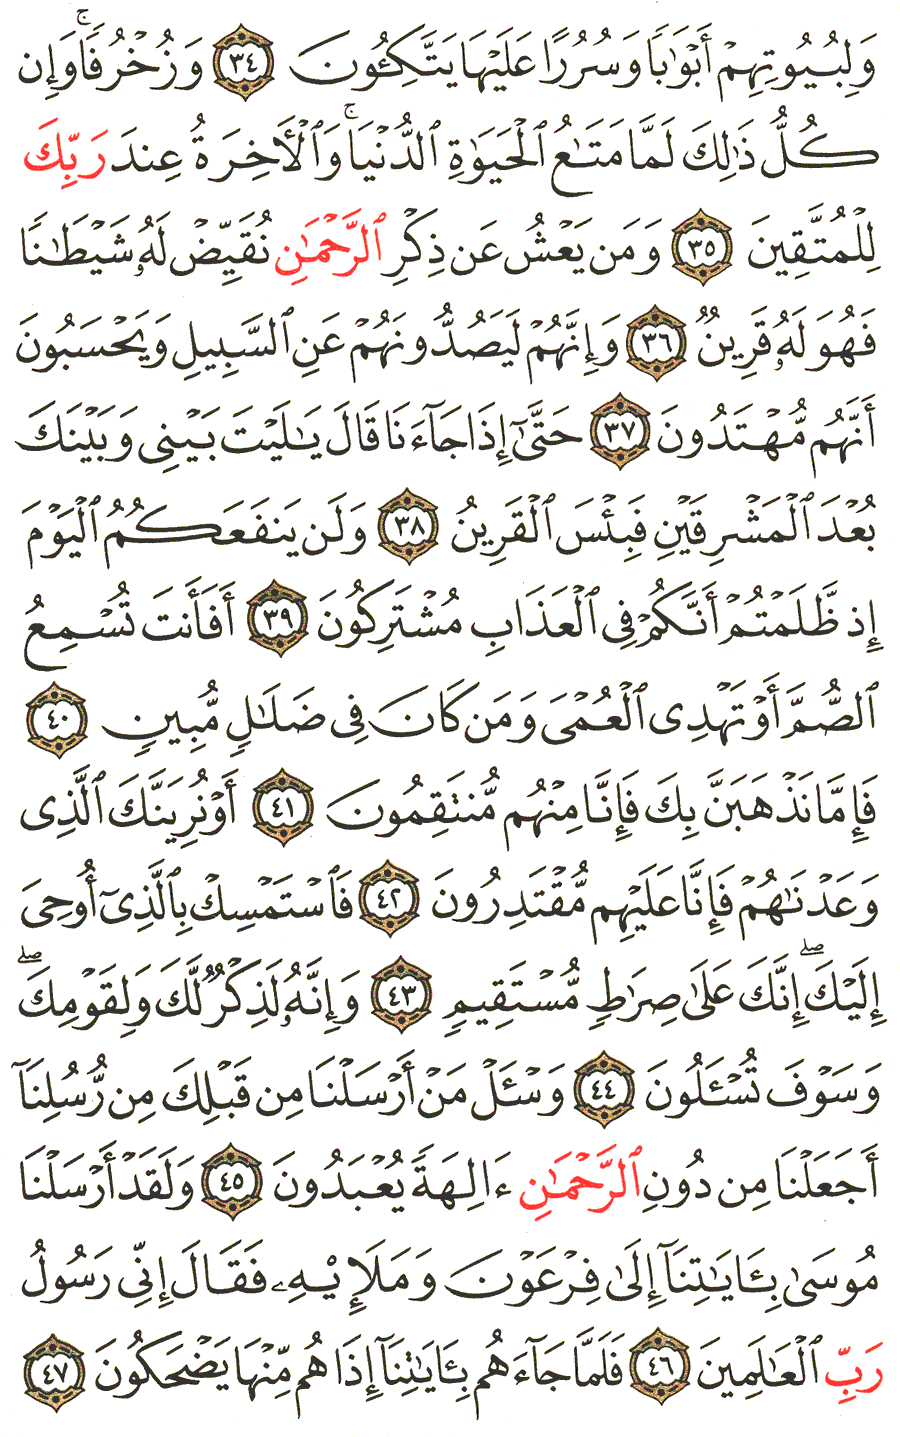 الصفحة 492 من القرآن الكريم